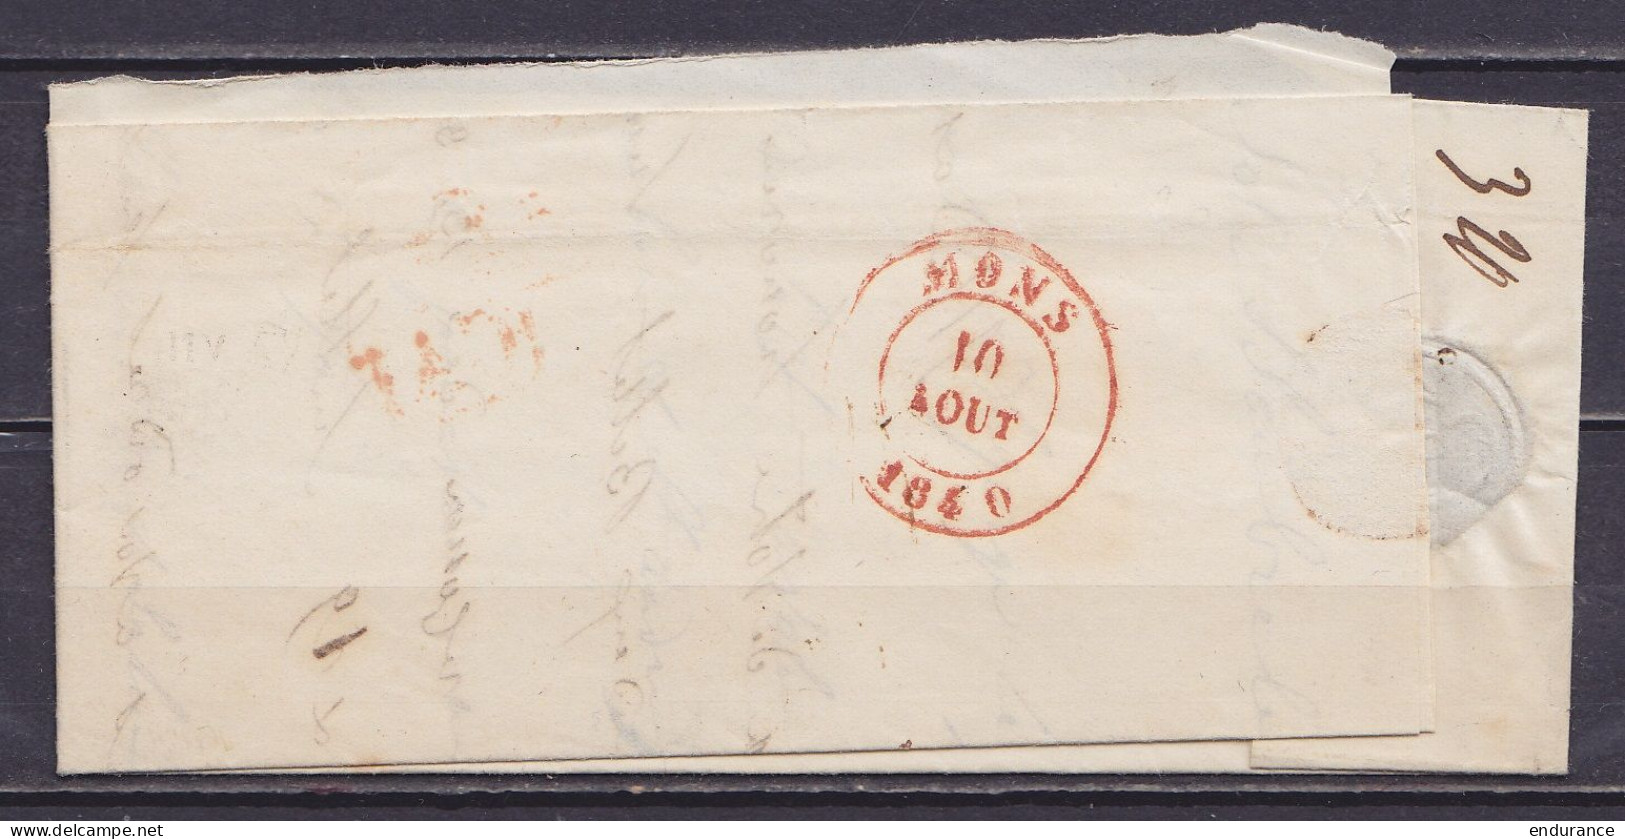 L. Datée 8 Août 1840 De Solre Càd T18 SOLRE-SUR-SAMBRE /8/VIII Pour MONS - [CA] - Port "3" (au Dos: Càd Arrivée MONS) - 1830-1849 (Unabhängiges Belgien)